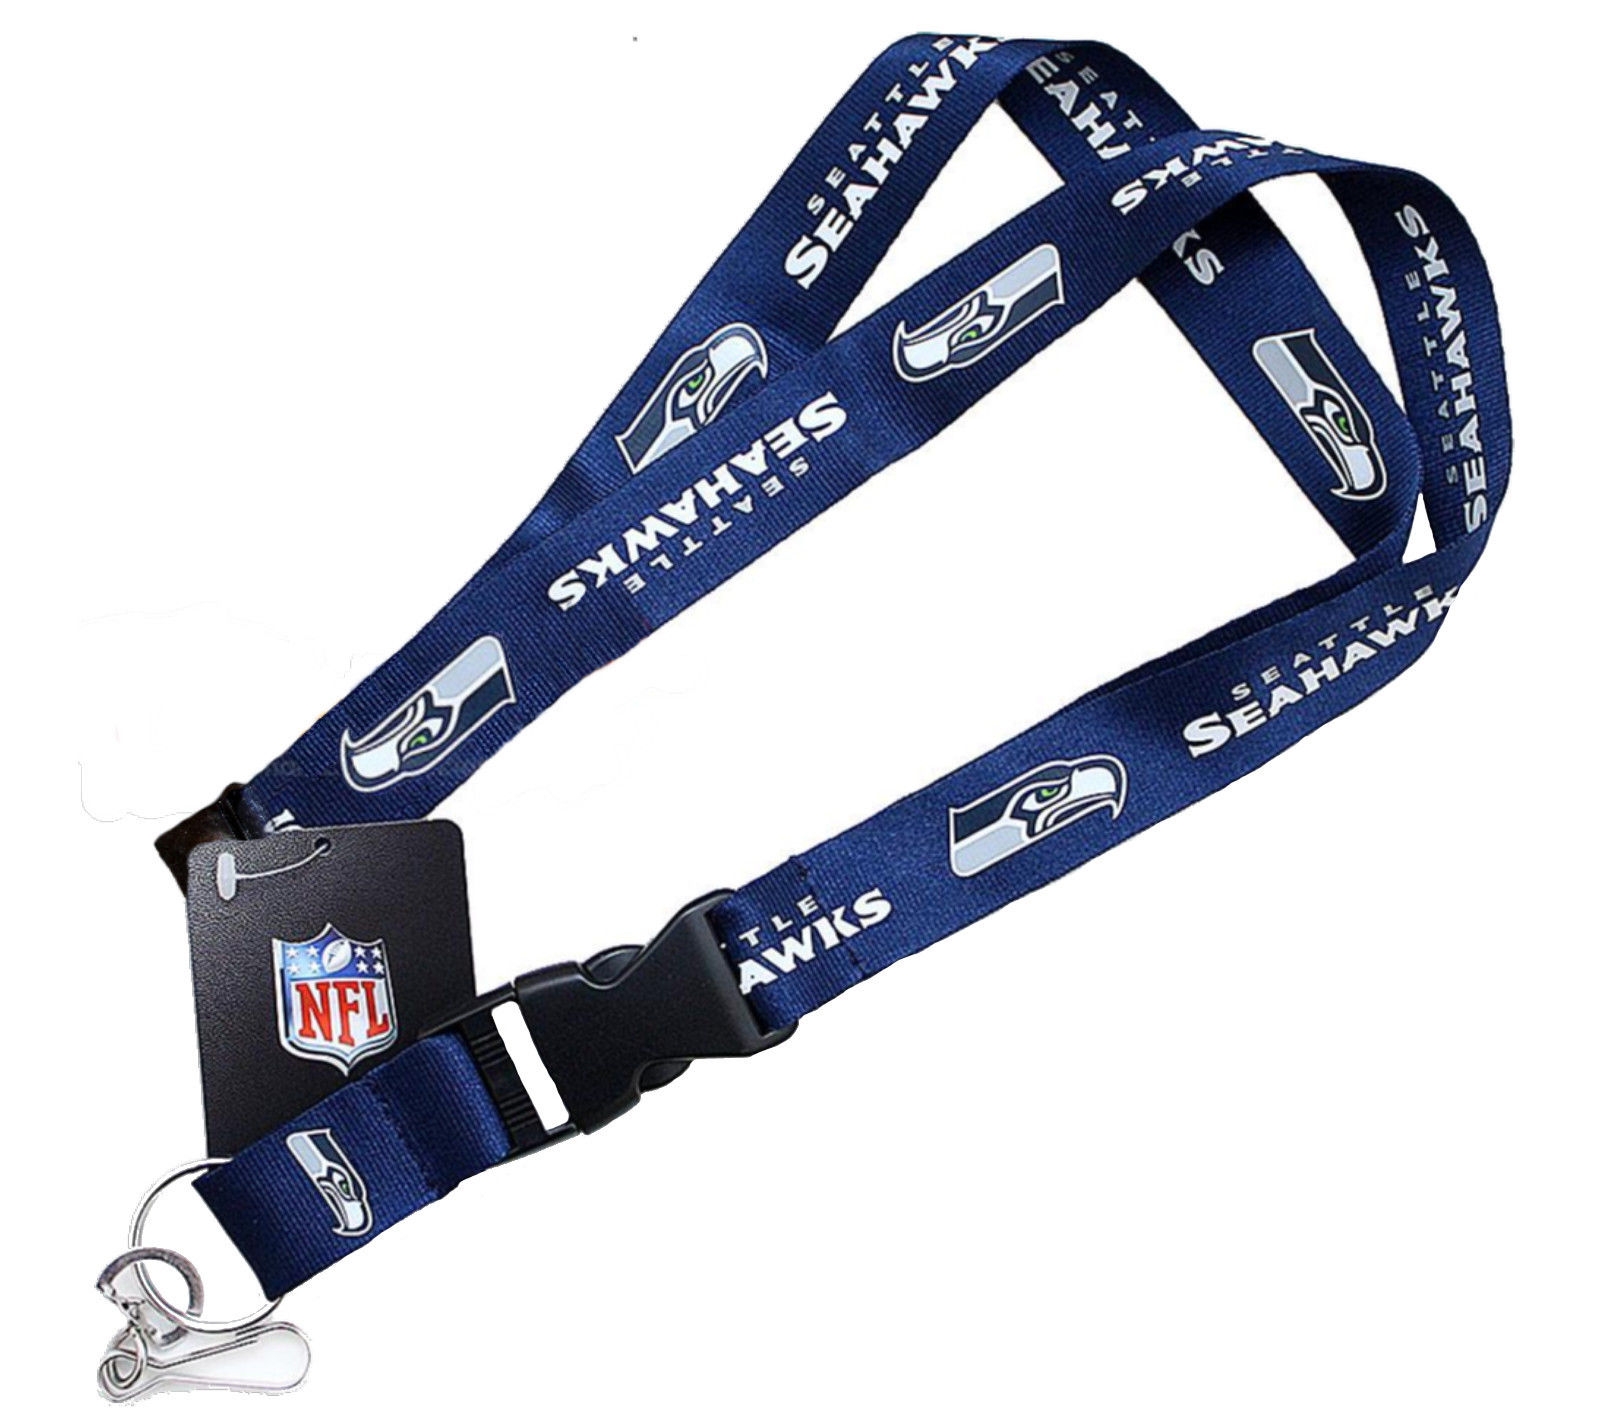 NFL Seattle Seahawks Lanyard - Blue